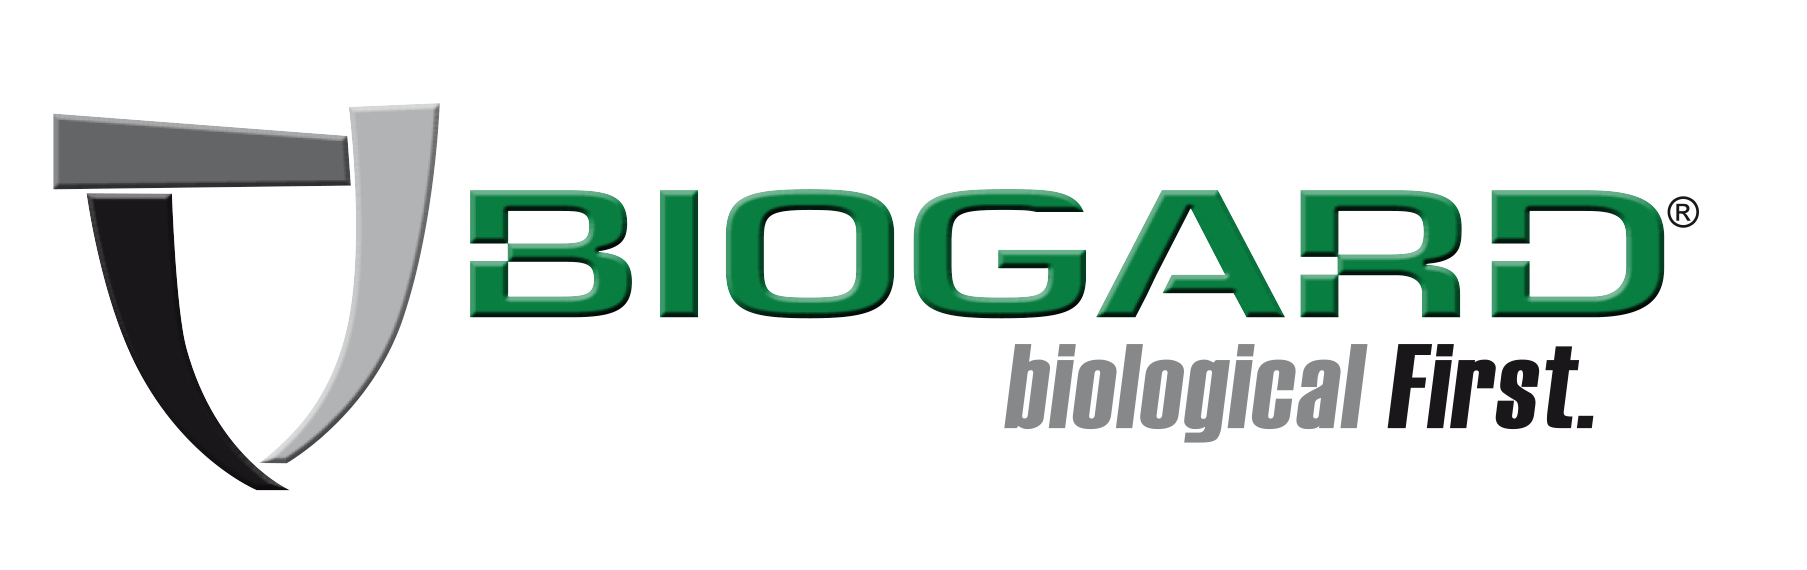 CBC BIOGARD biological First 310522